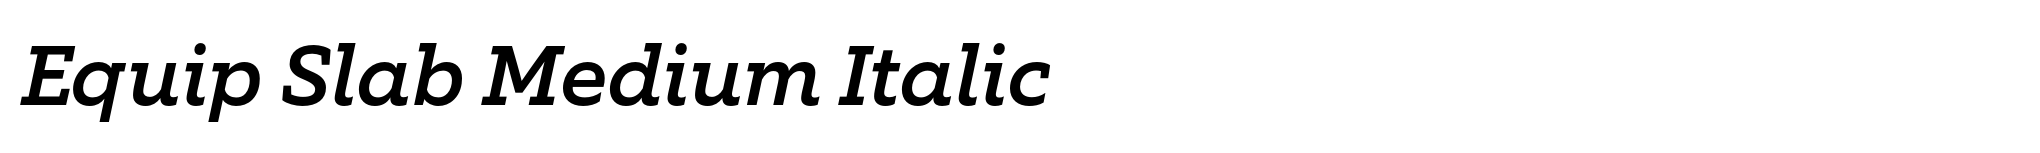 Equip Slab Medium Italic image